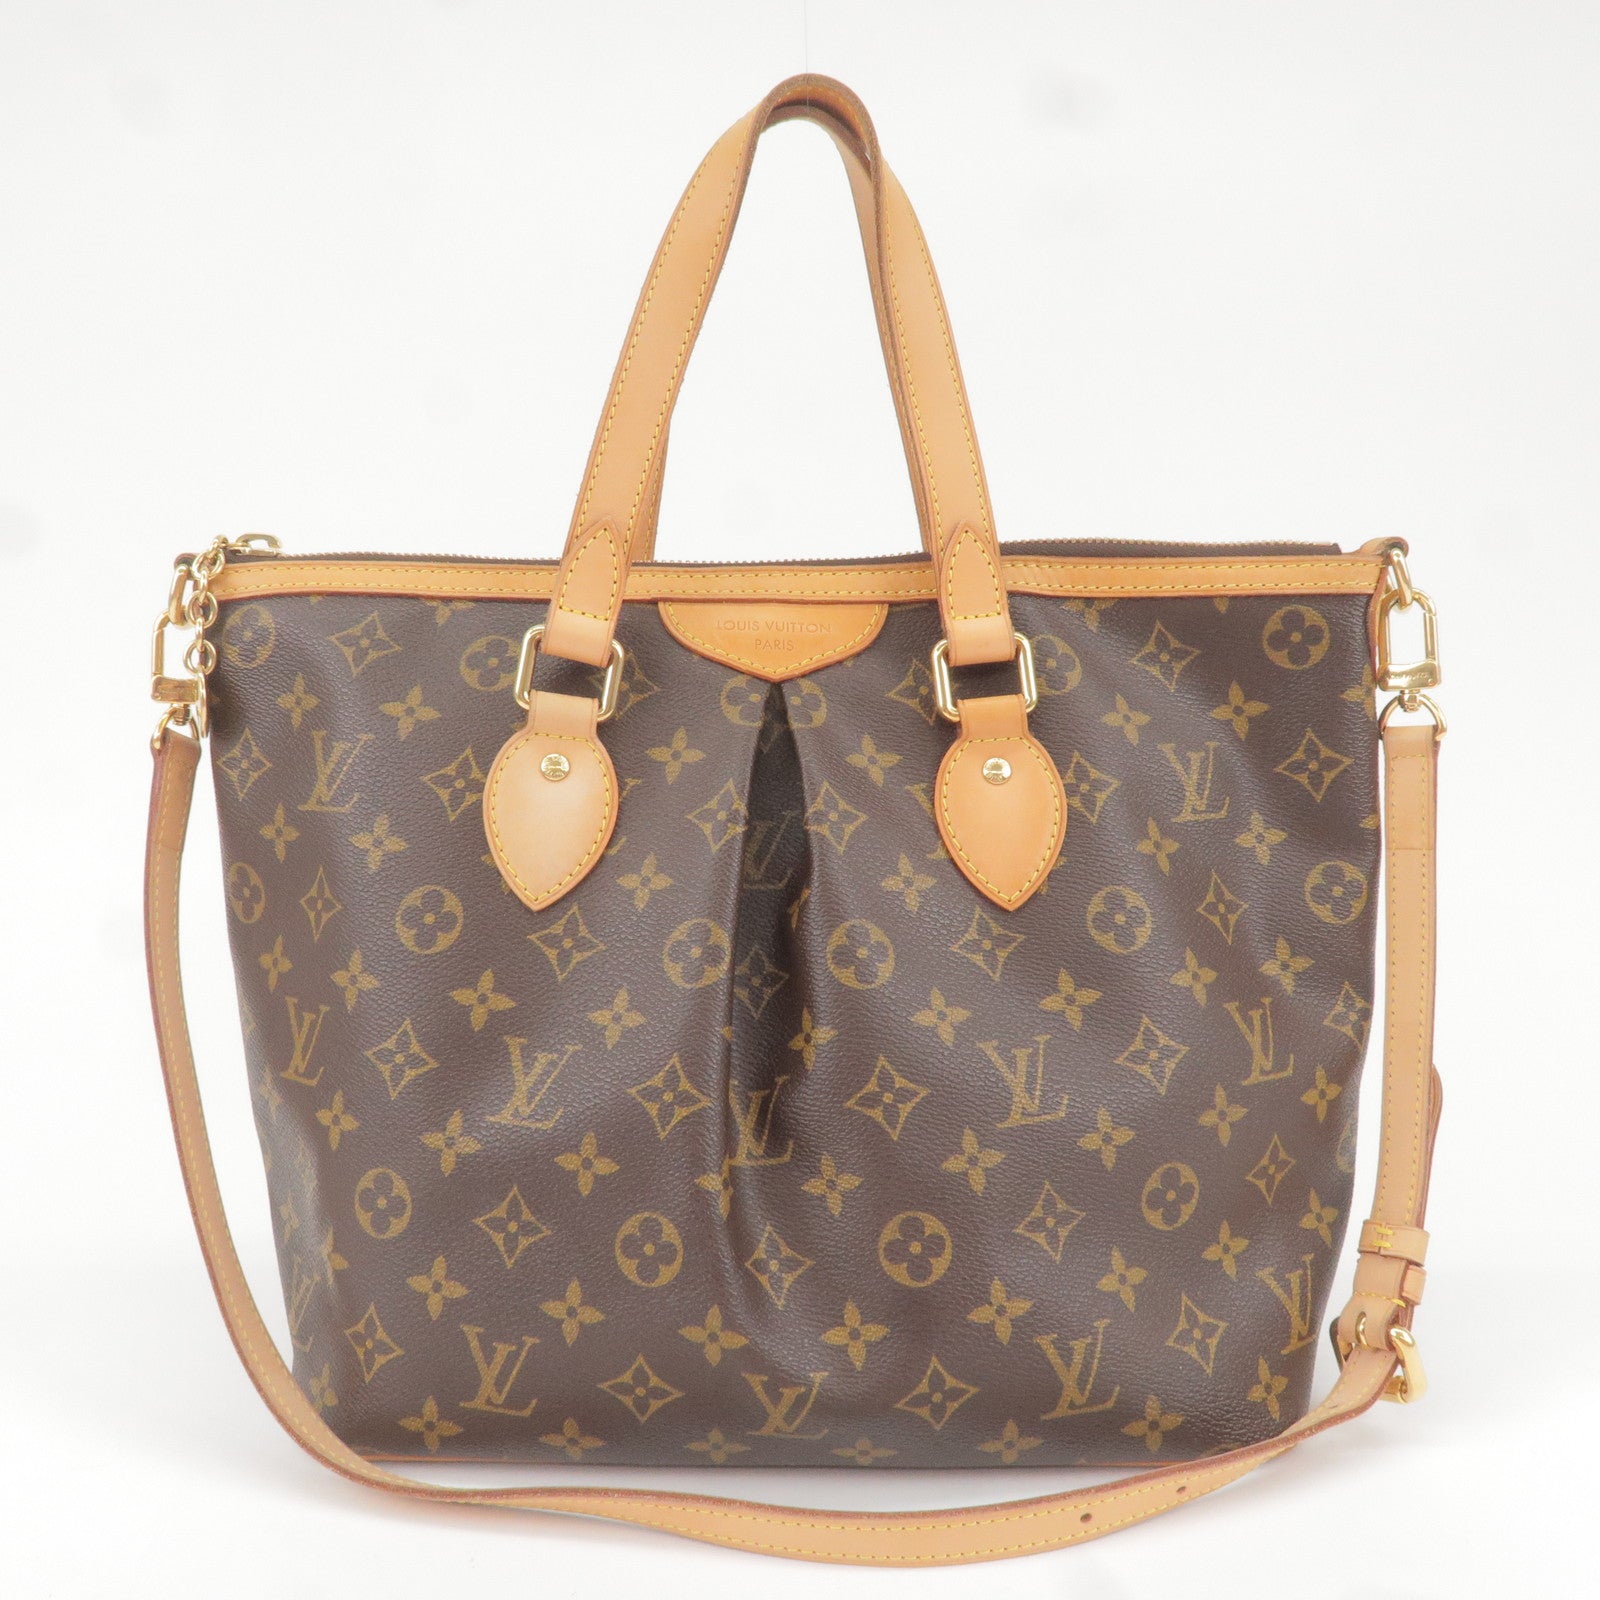 Louis Vuitton Vintage - Bastille MM Bag - Red - Leather Handbag